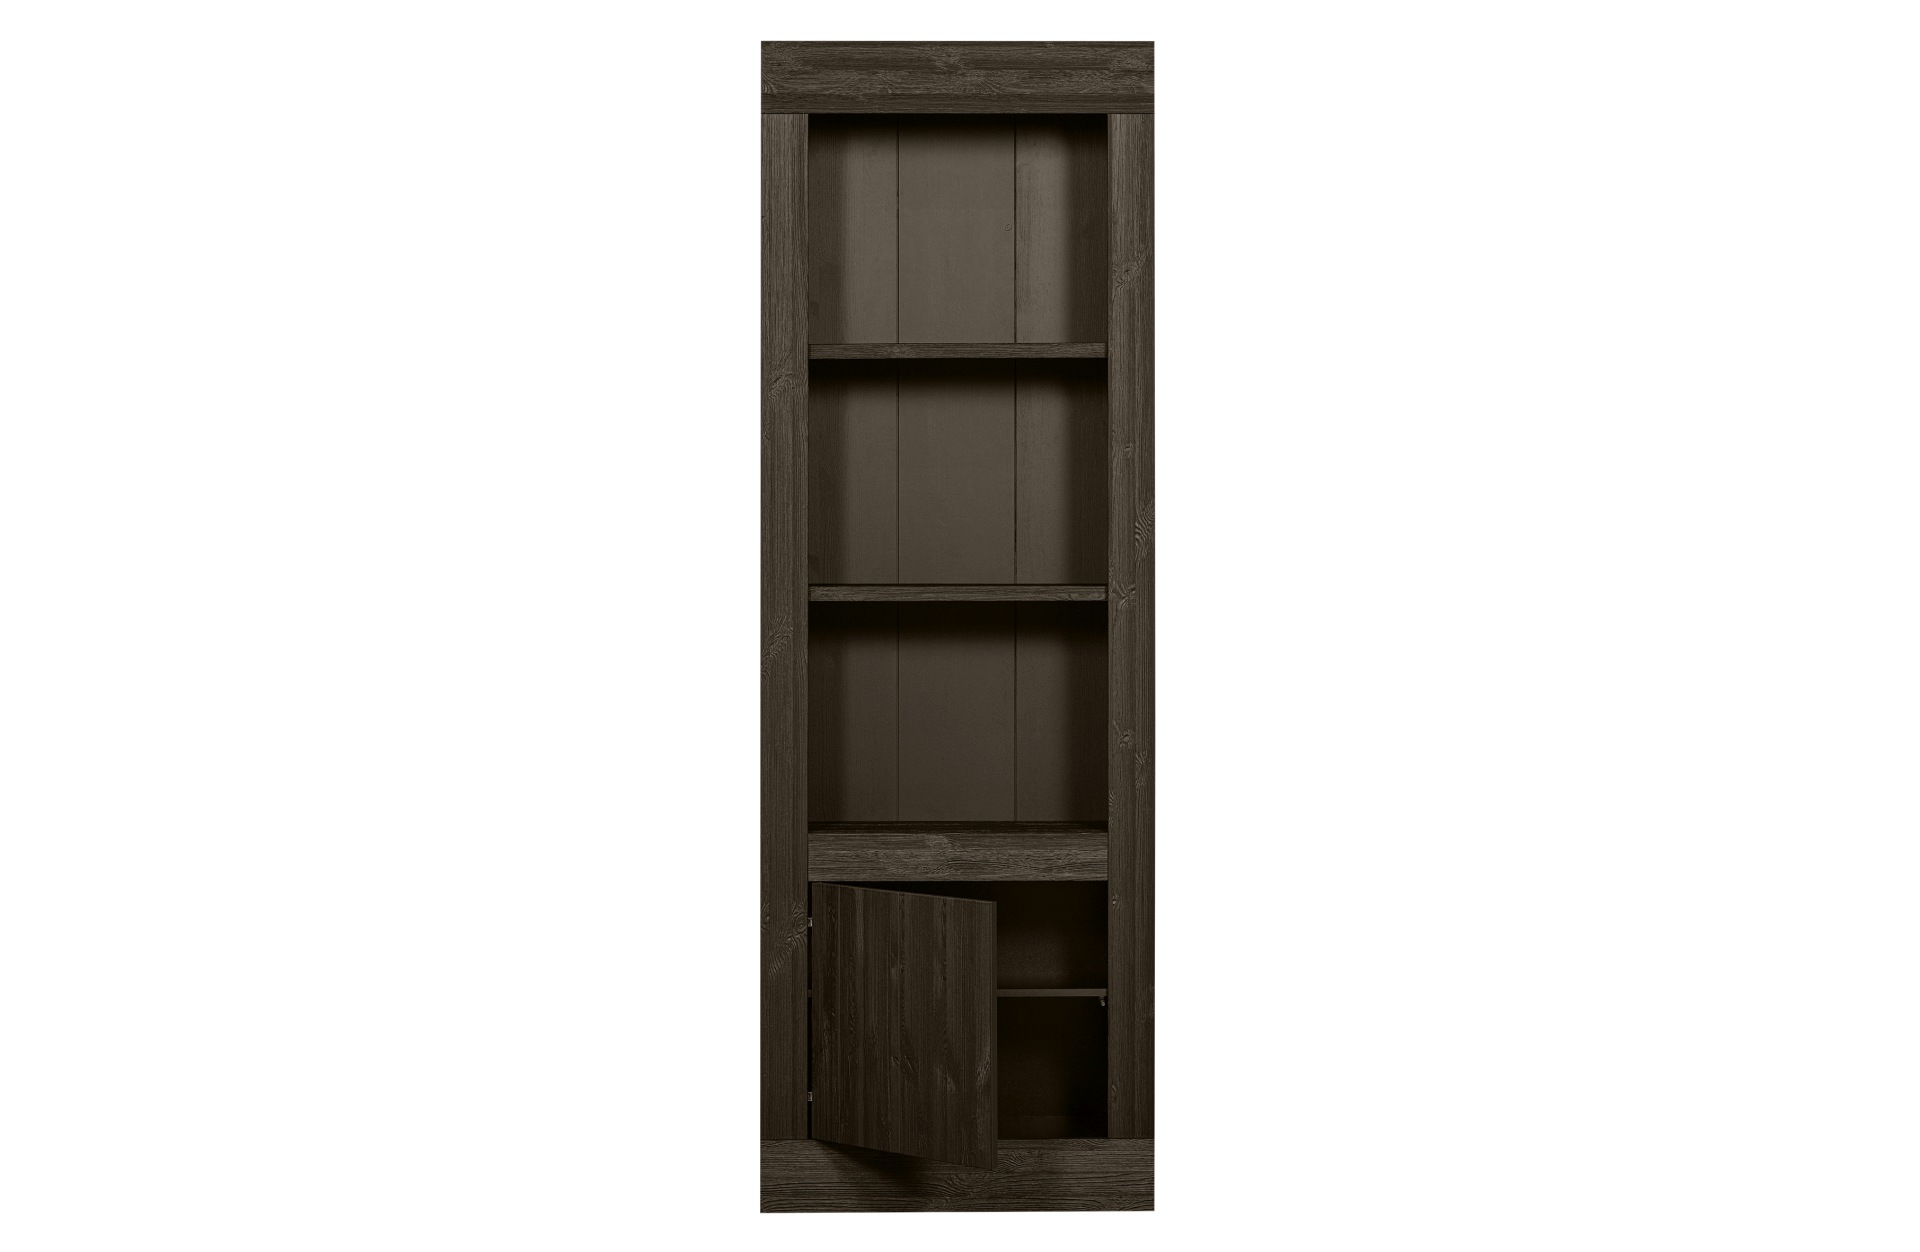 Das Bücherregal Yumi überzeugt mit seinem modernem Design. Gefertigt wurde es aus Kiefernholz, welches einen dunkelbraunen Farbton besitzt. Das Regal verfügt über eine Tür und drei Fächer. Die Breite beträgt 78 cm.